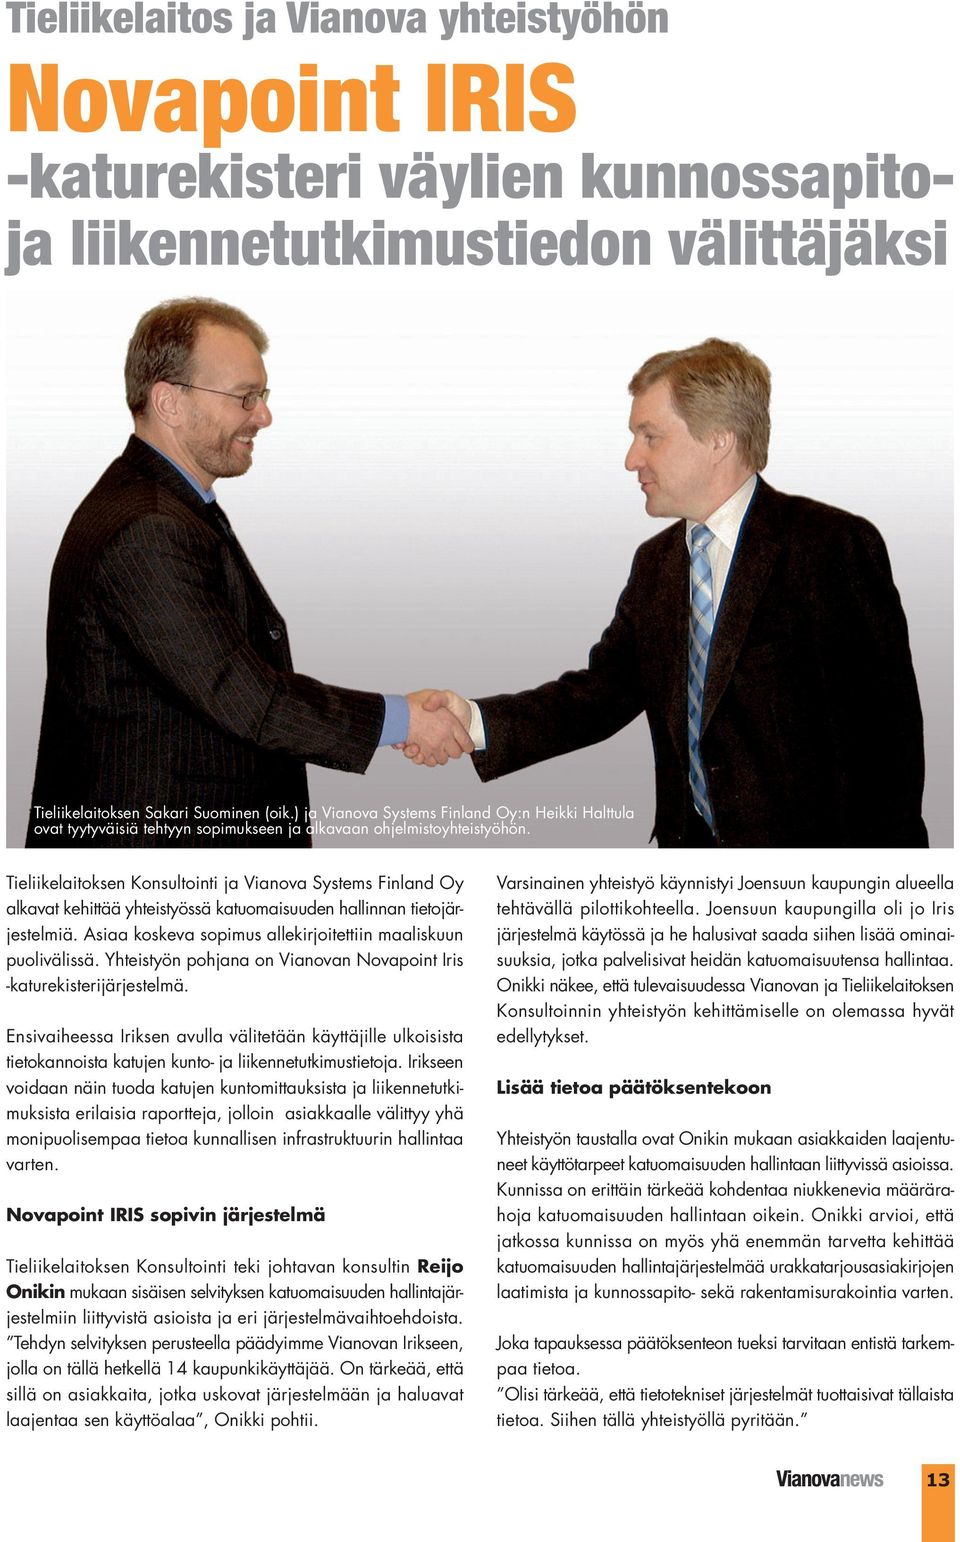 Tieliikelaitoksen Konsultointi ja Vianova Systems Finland Oy alkavat kehittää yhteistyössä katuomaisuuden hallinnan tietojärjestelmiä. Asiaa koskeva sopimus allekirjoitettiin maaliskuun puolivälissä.